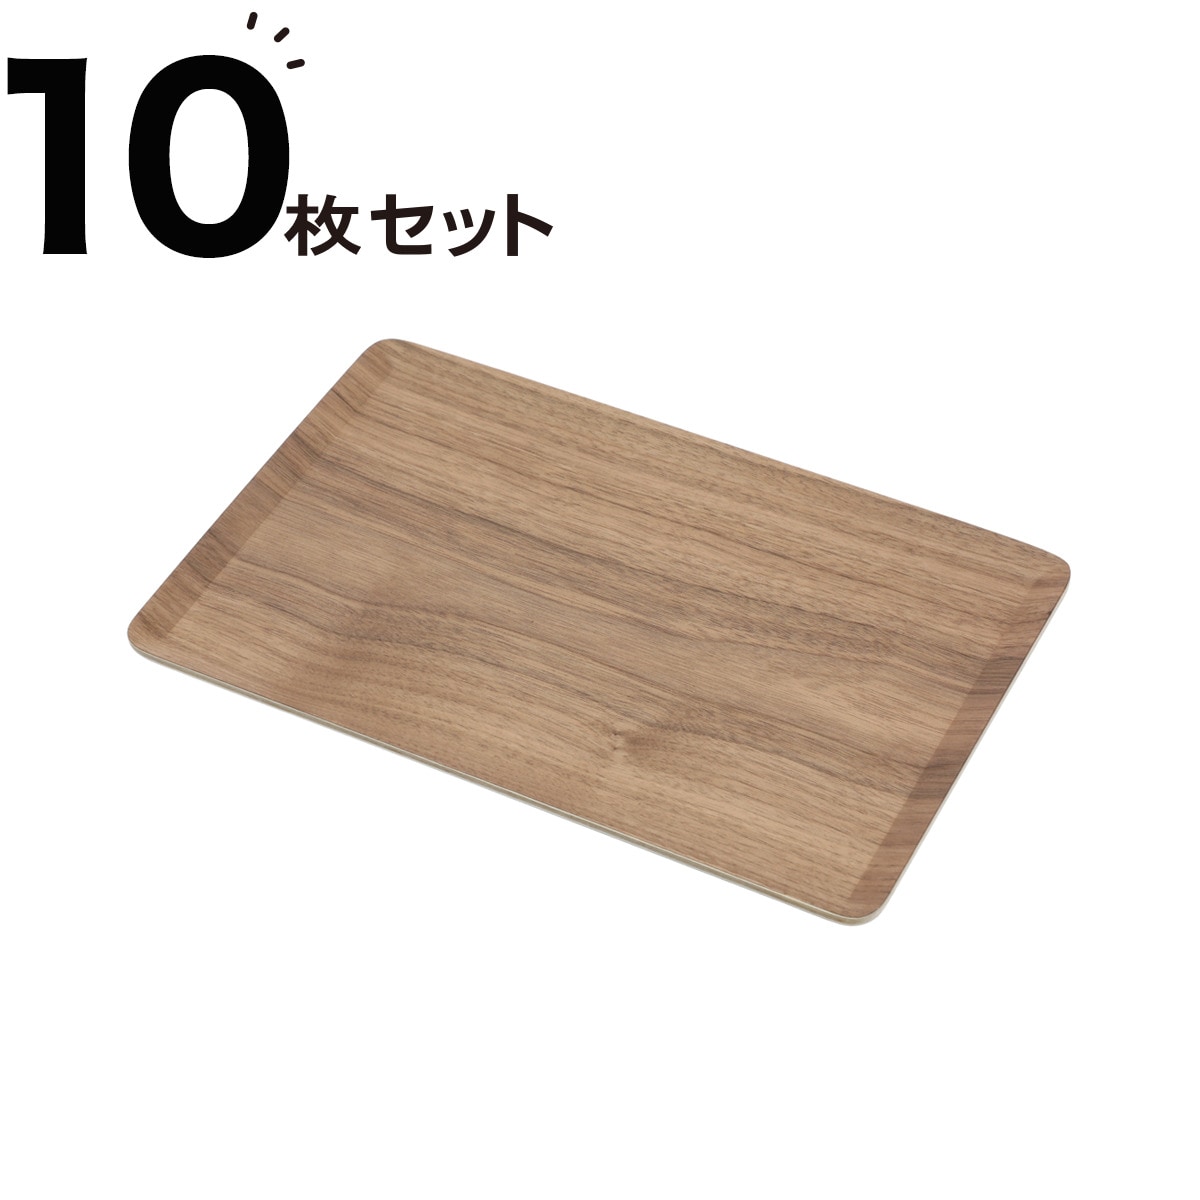 ニトリの[幅28cm] すべりにくい木製トレー(S ウォールナット)10枚セット(キッチン)